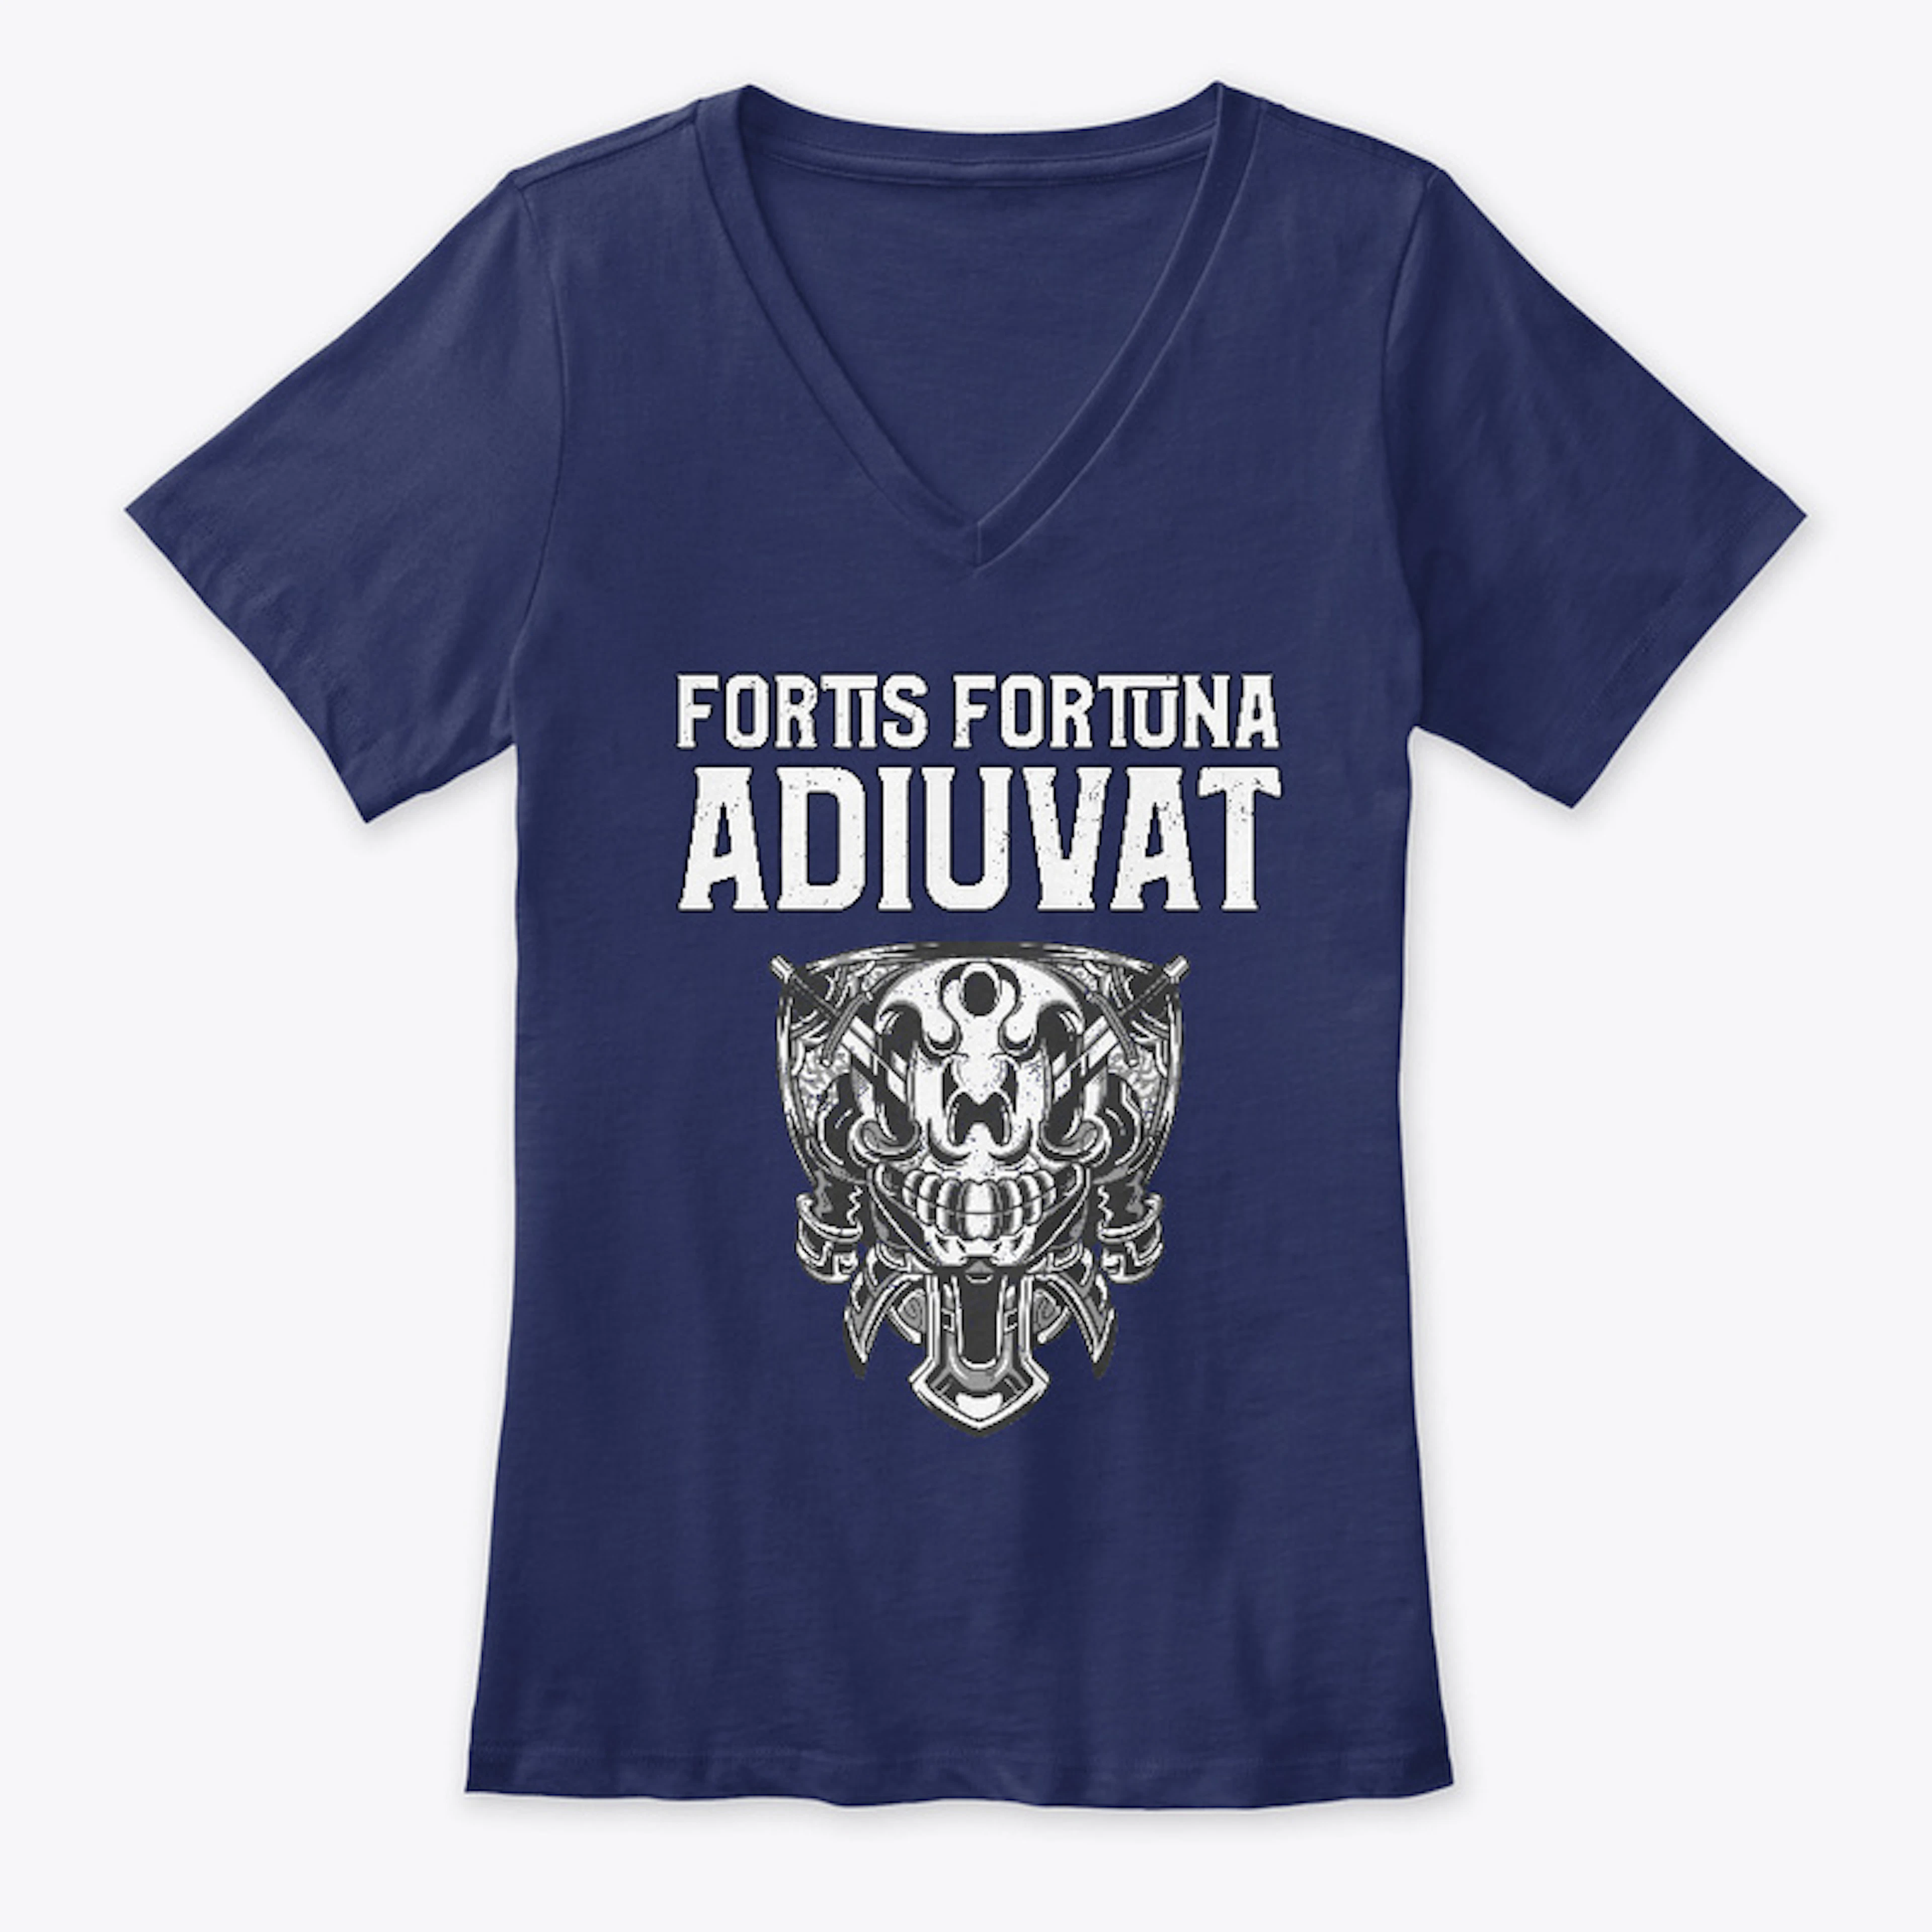 Fortis Fortuna Adiuvat!